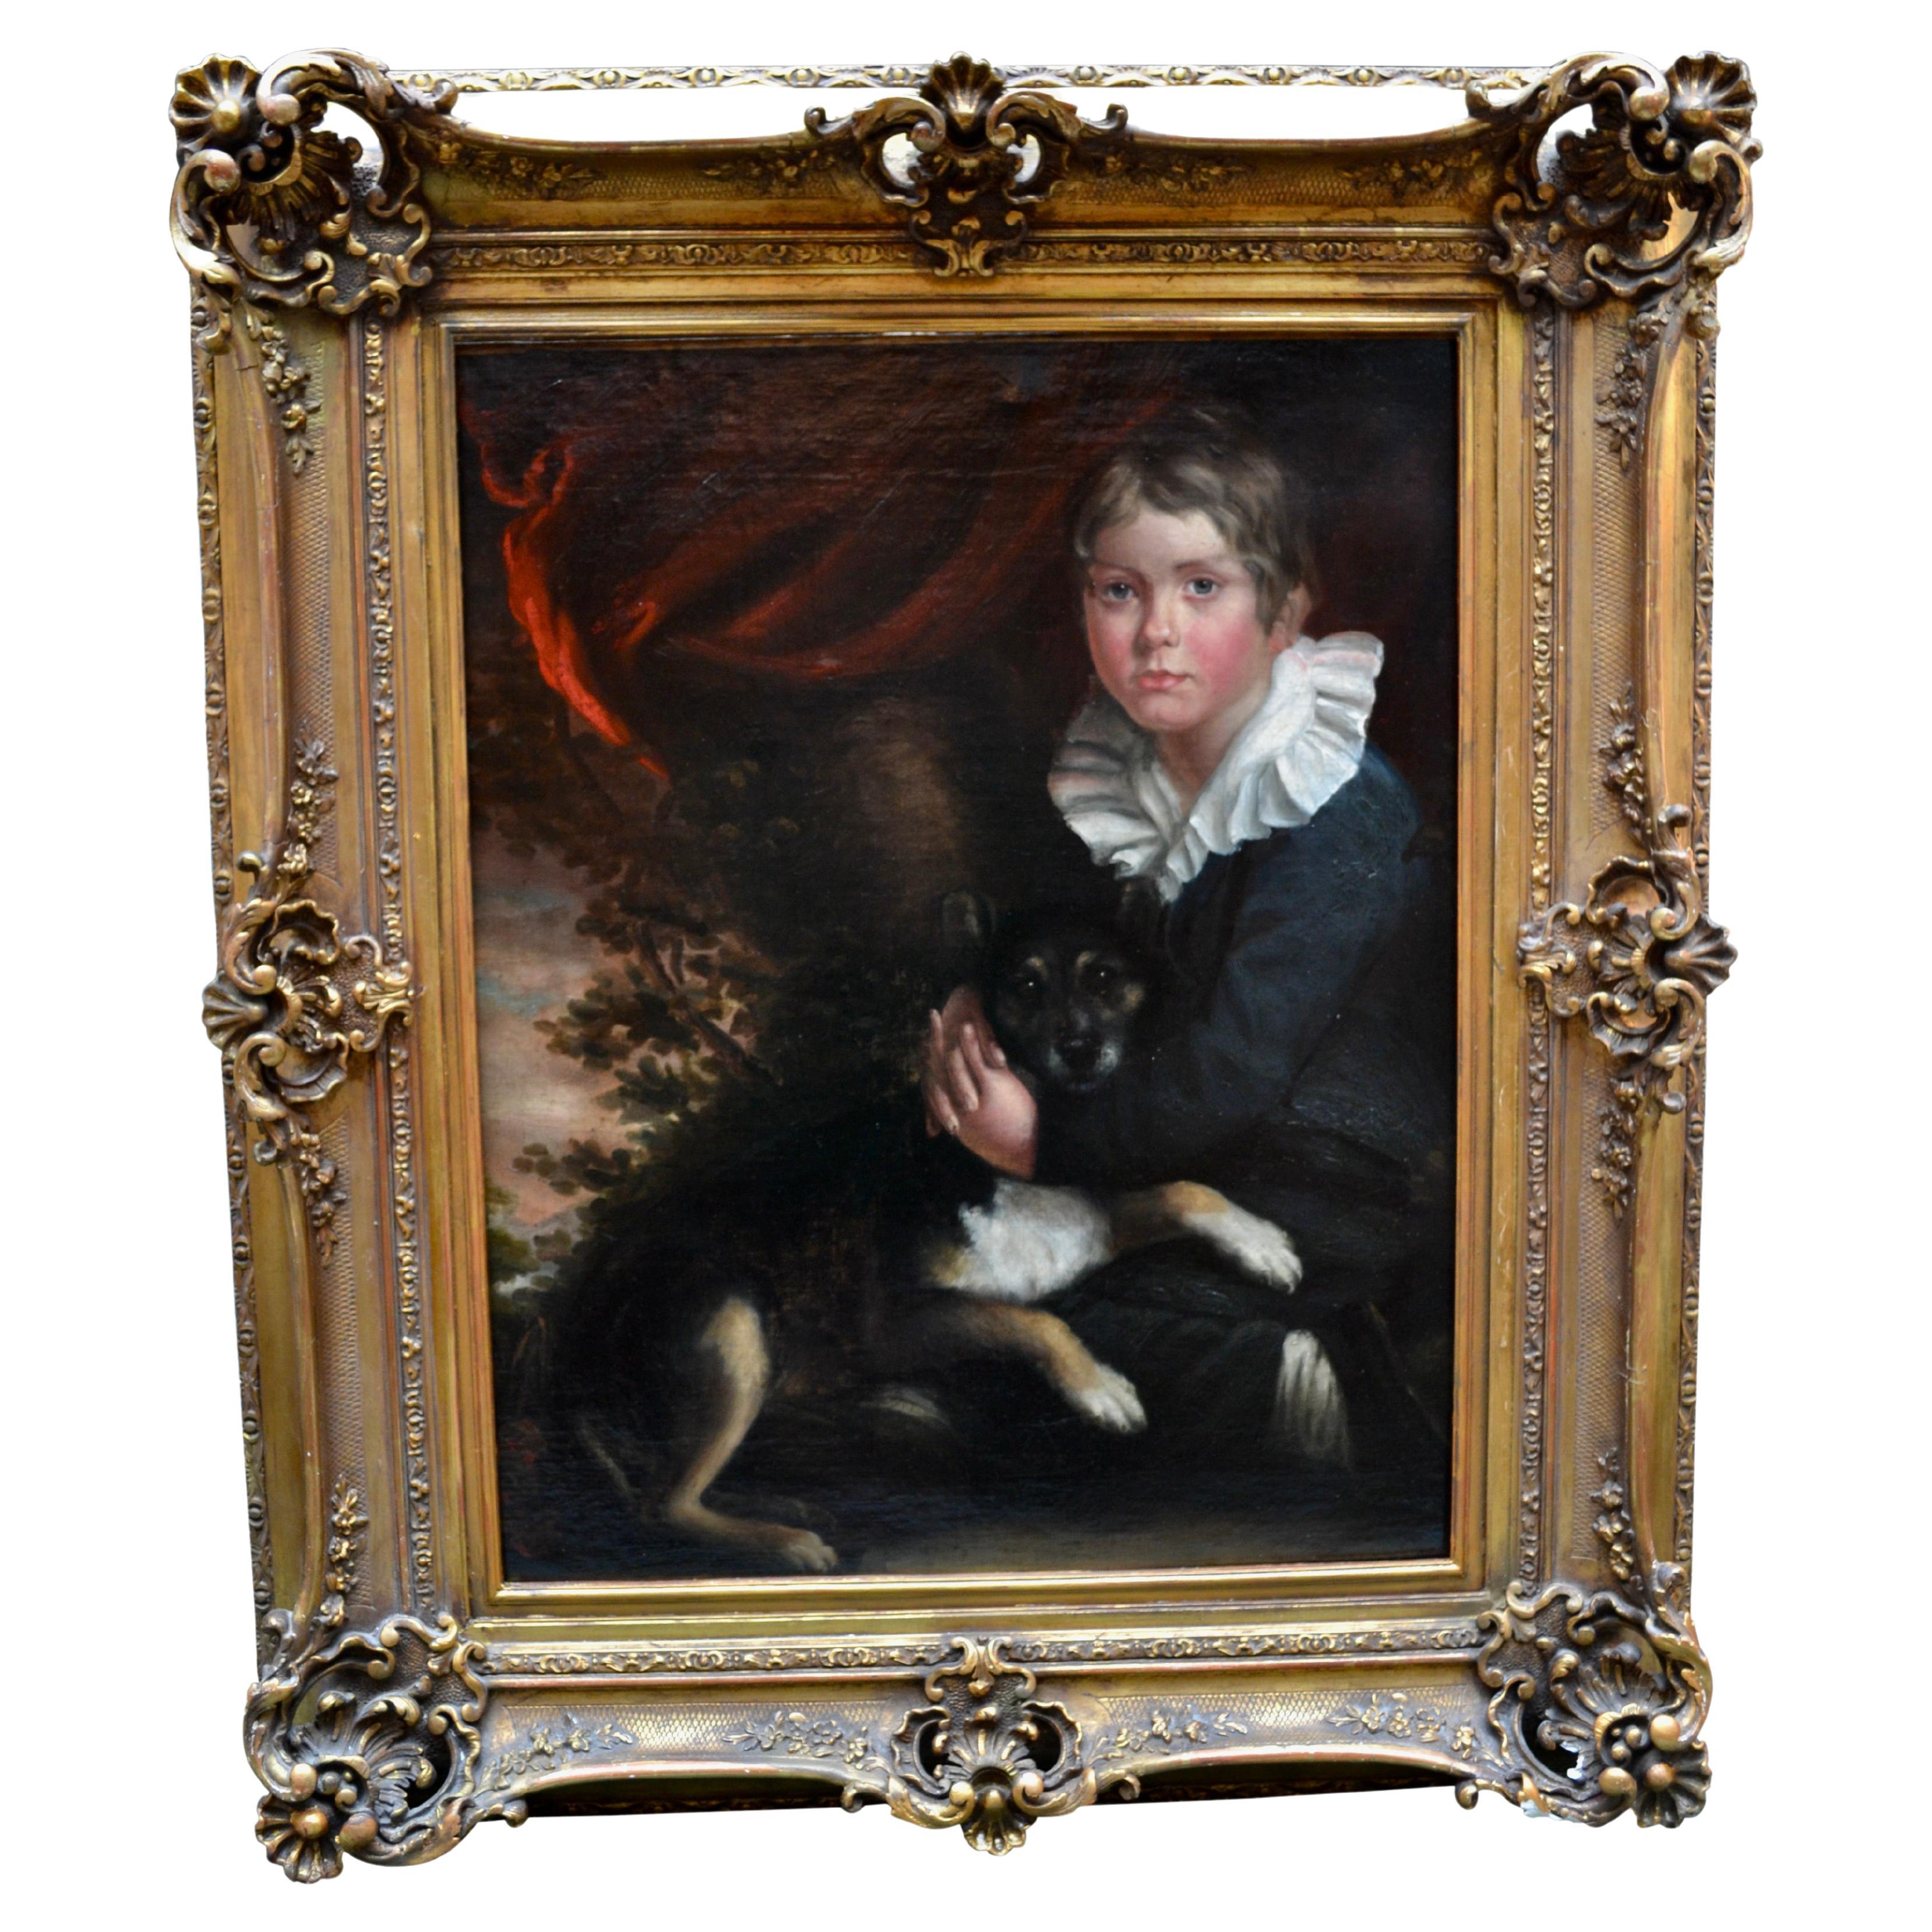 La peinture à l'huile sur toile représente un jeune garçon faisant un câlin à son chien, qui est couché sur les genoux du garçon. Elle est très proche du style du peintre écossais Henry Raeburn. Le garçon est vêtu d'un costume sombre du début du